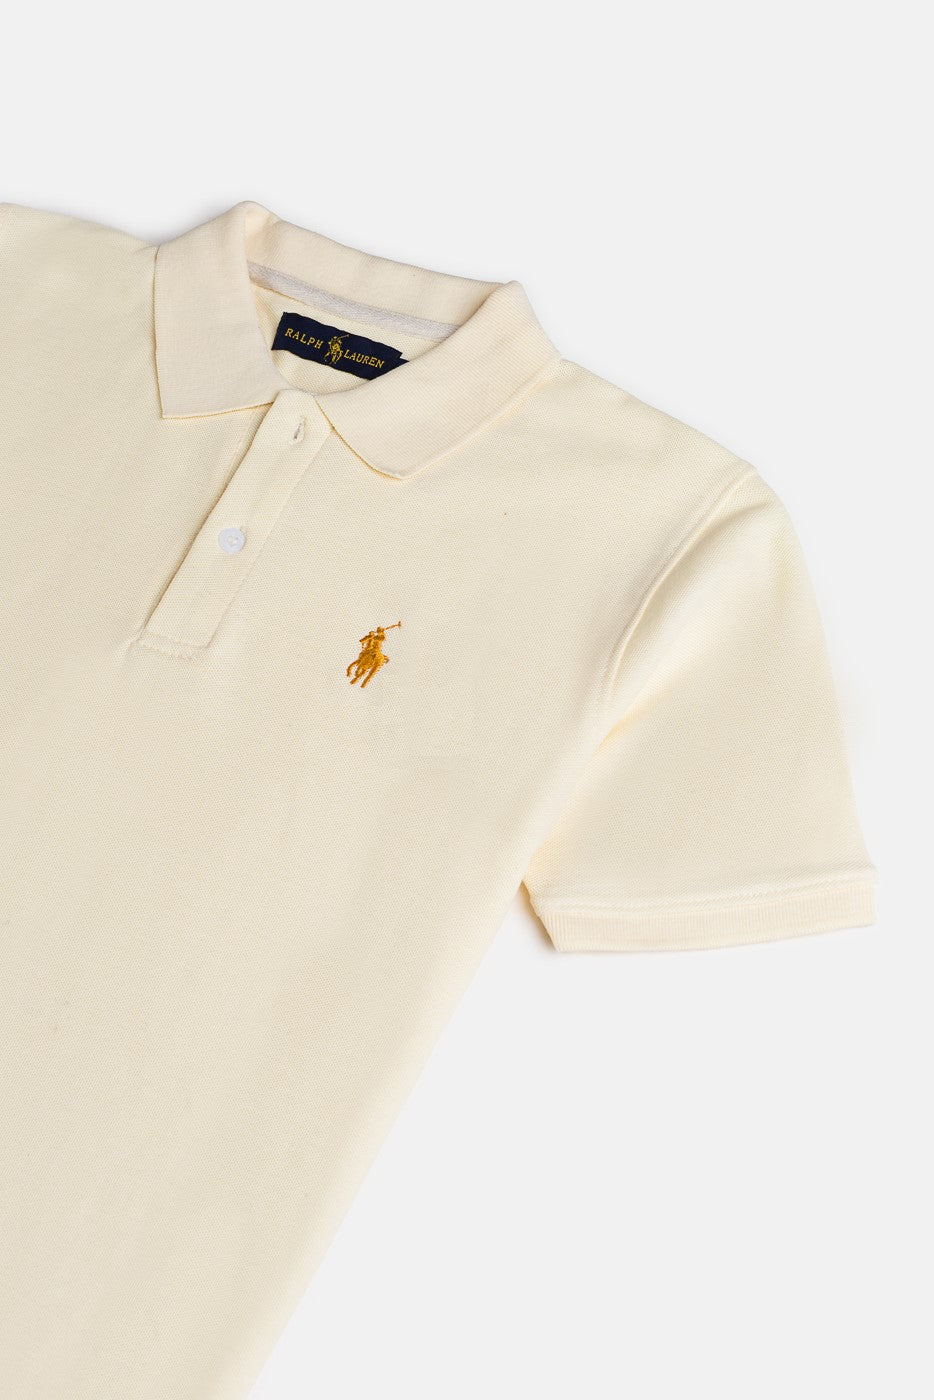 RL Premium Imported Polo Shirt - Ivory